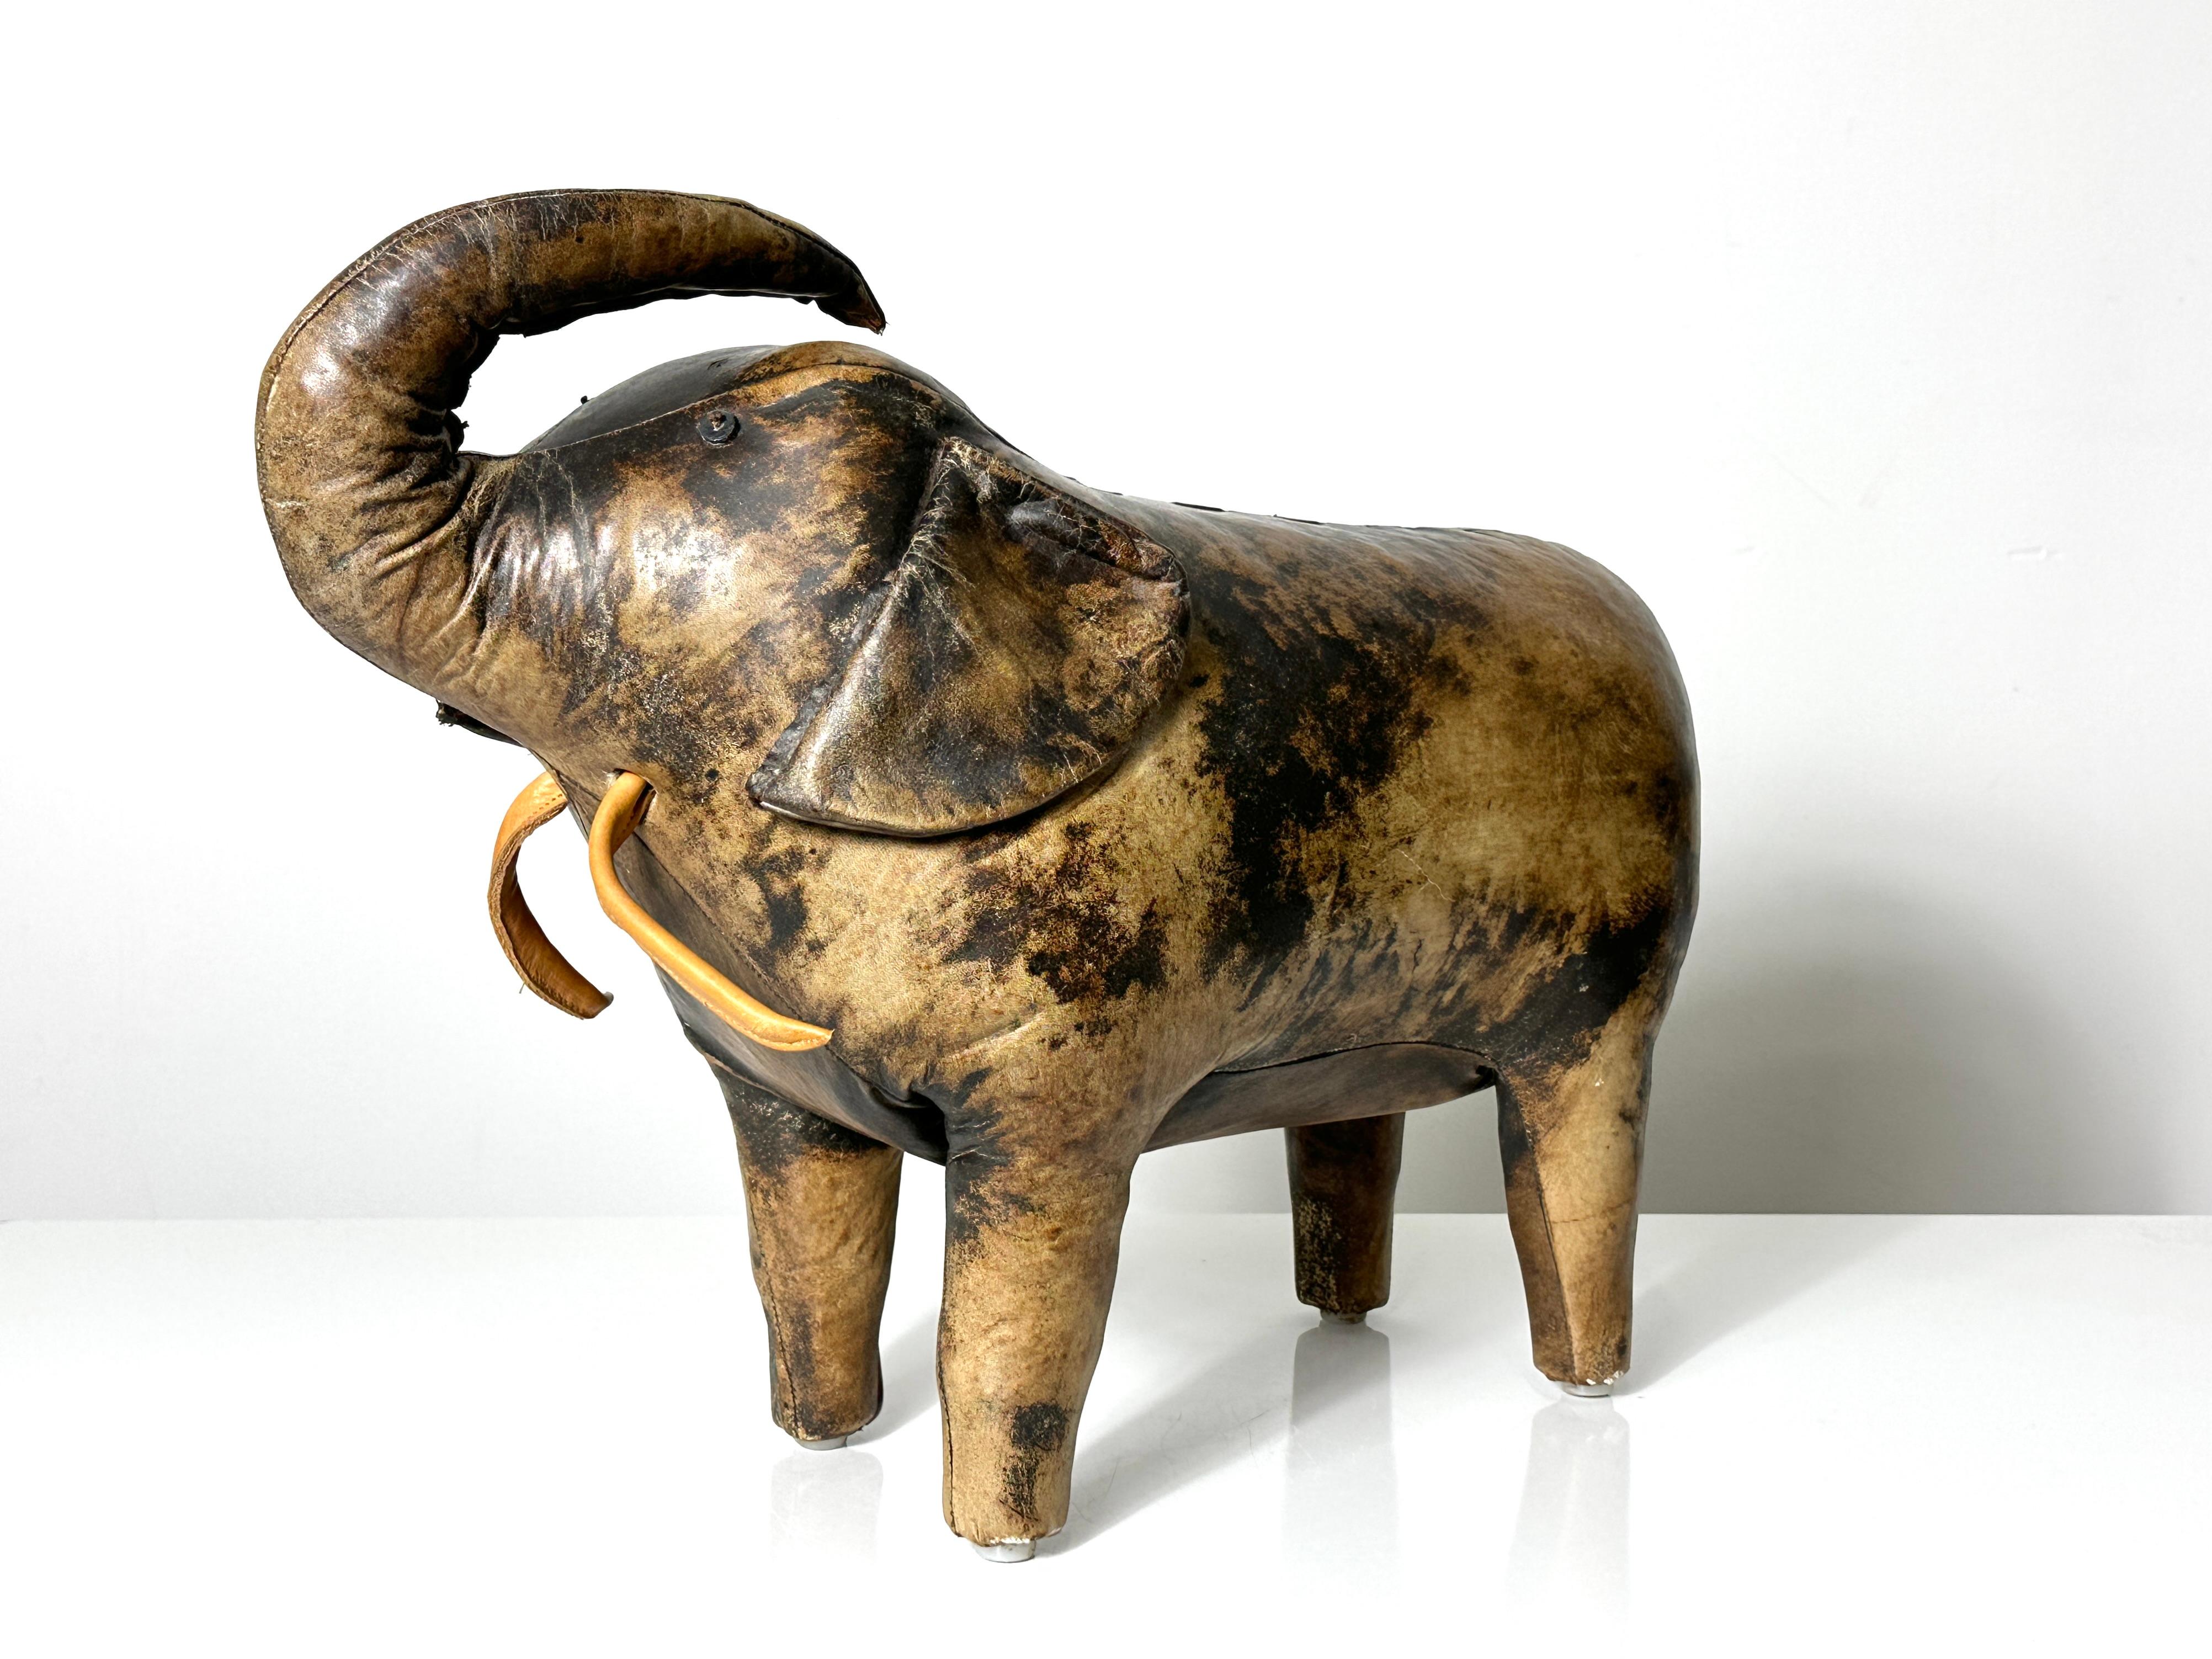 Tabouret éléphant en cuir de Dimitri Omersa pour Abercrombie & Fitch
Circa 1960 - 1970

Cuir cousu à la main avec oreilles tombantes, défenses en cuir et queue à pompon.
Un exemple unique avec des marbrures et des couleurs vraiment